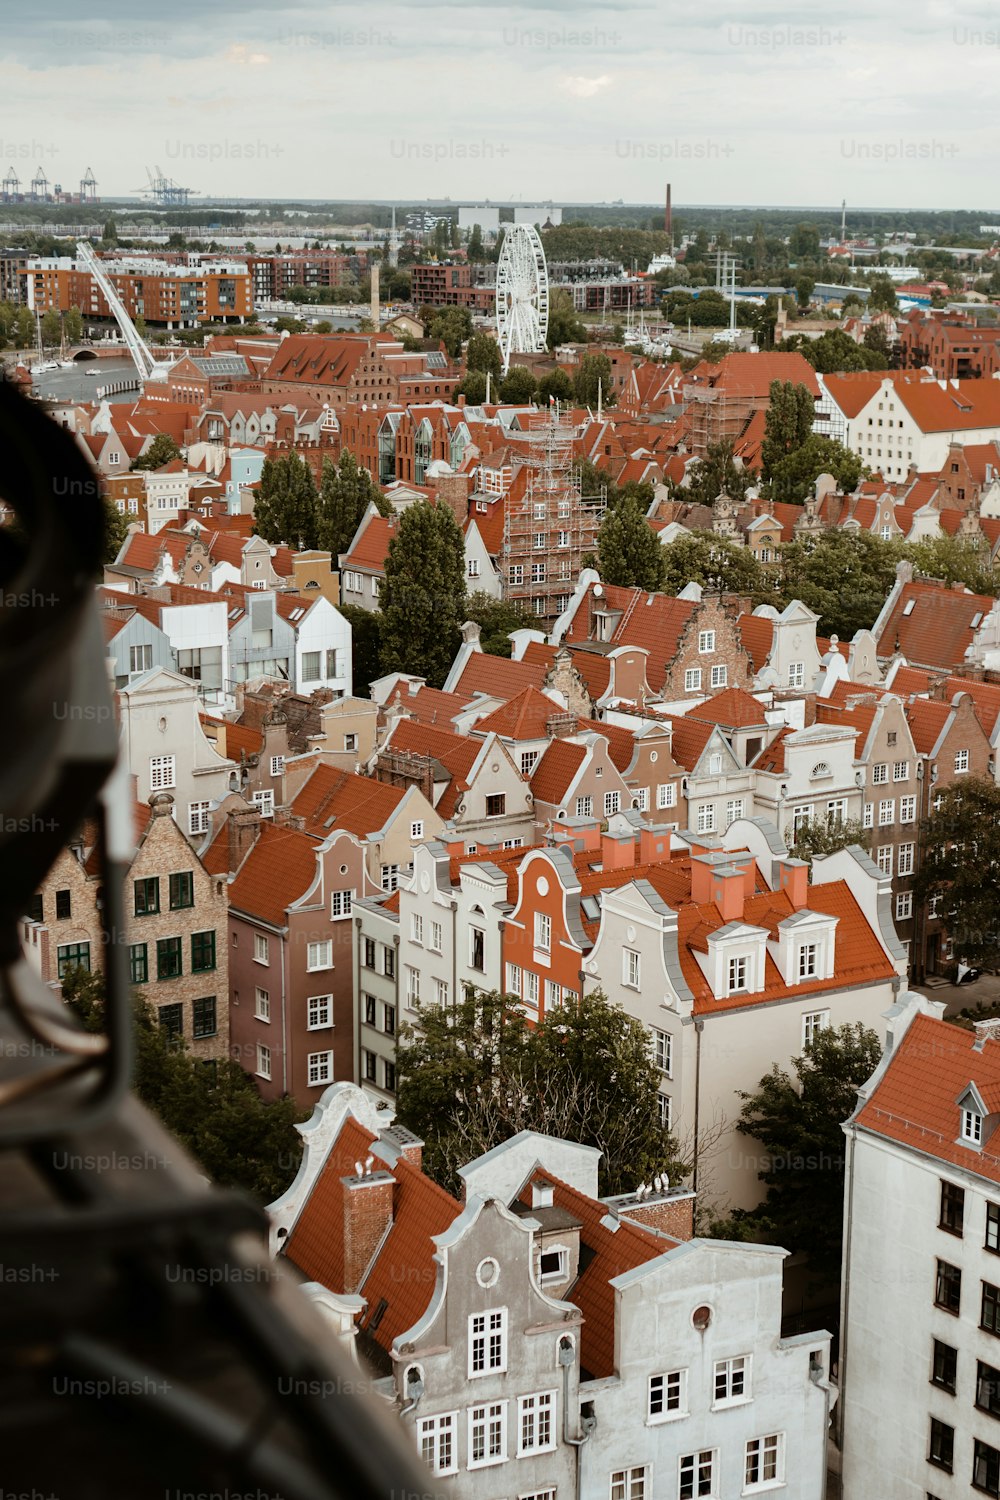 Blick auf eine Stadt von einem hohen Gebäude aus